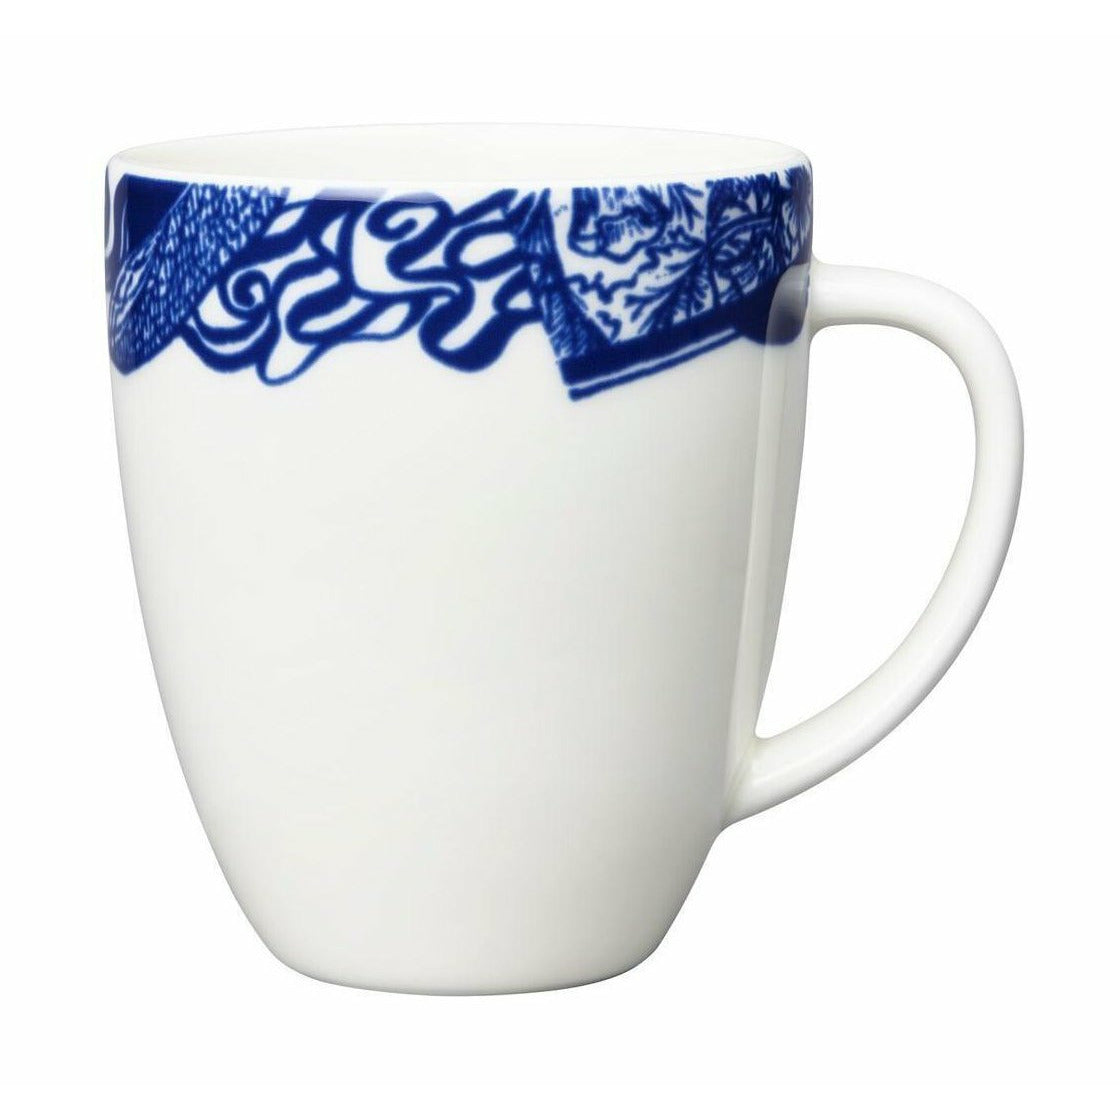 Arabia Pastoraali maljakko 13 cm, valkoinen/sininen